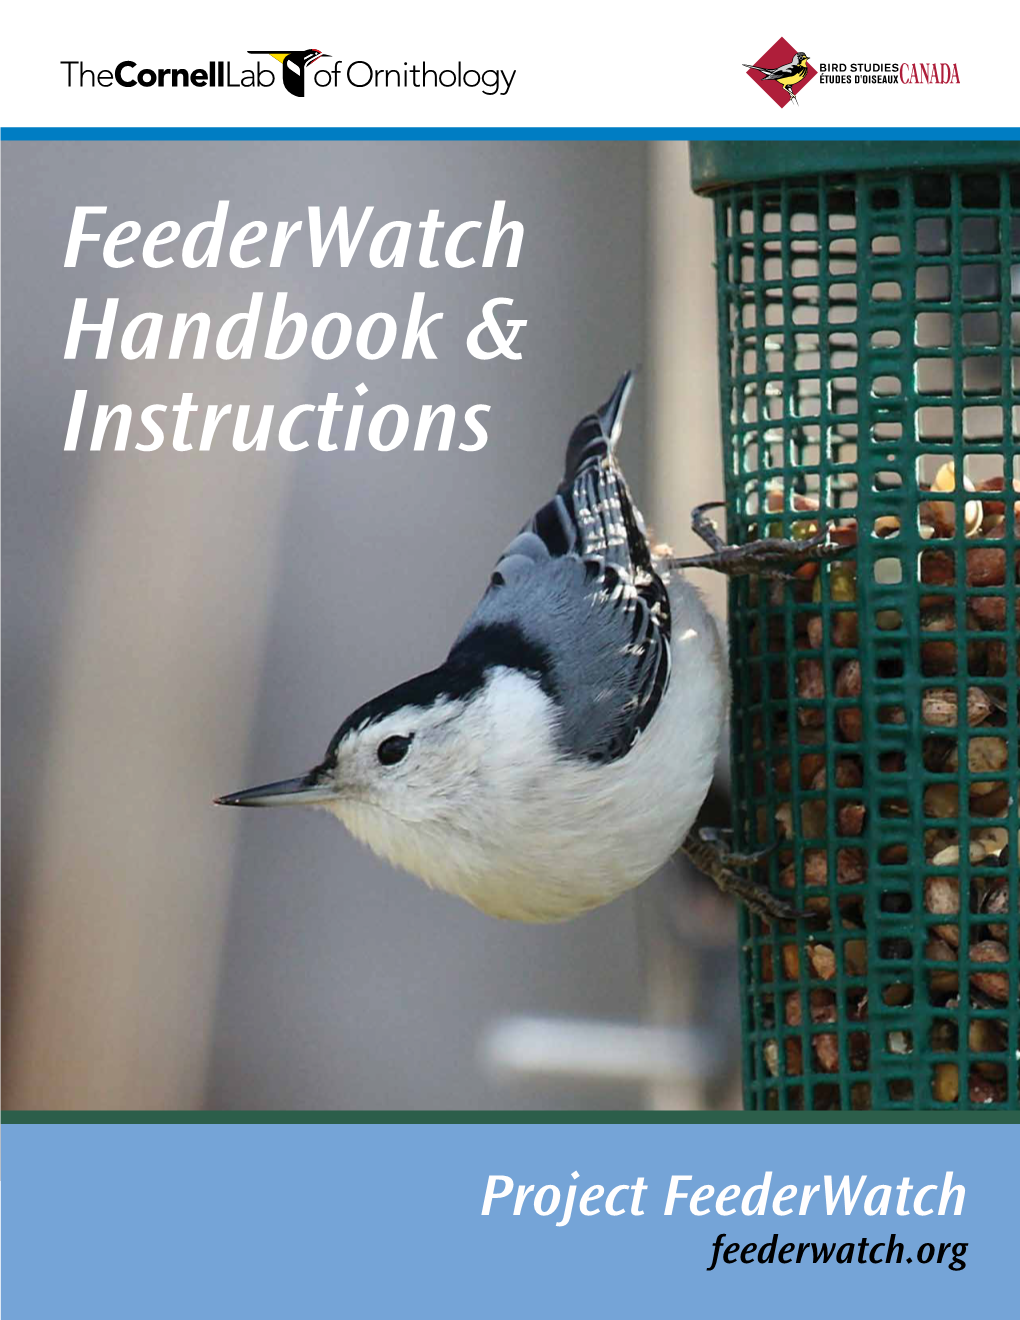 Feederwatch Handbook & Instructions